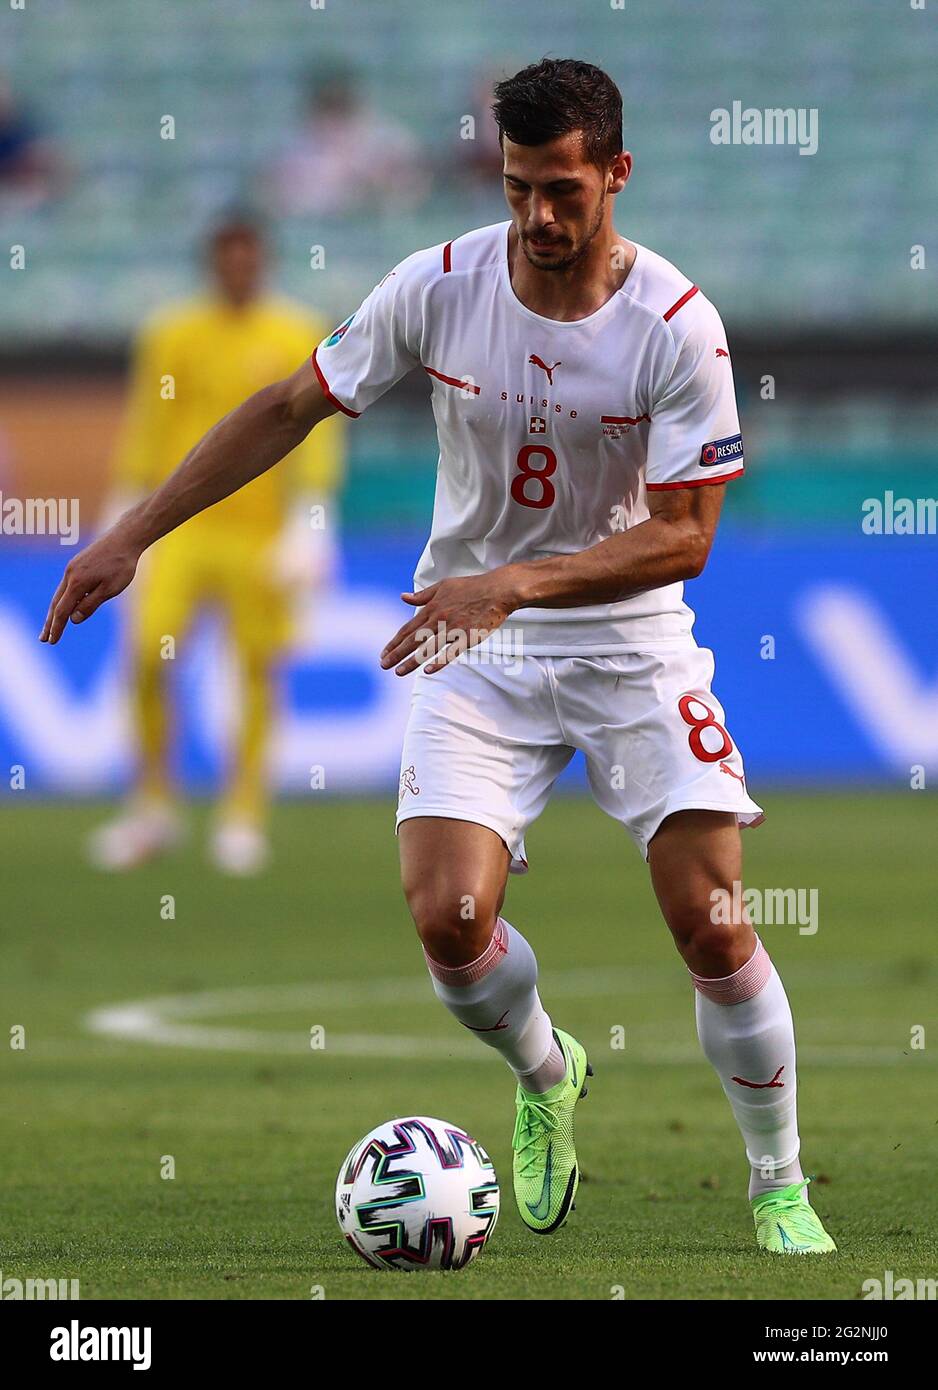 Remo Freuler della Svizzera durante la partita UEFA Euro 2020 del Gruppo A allo Stadio Olimpico di Baku, Azerbaigian. Data immagine: Sabato 12 giugno 2021. Foto Stock